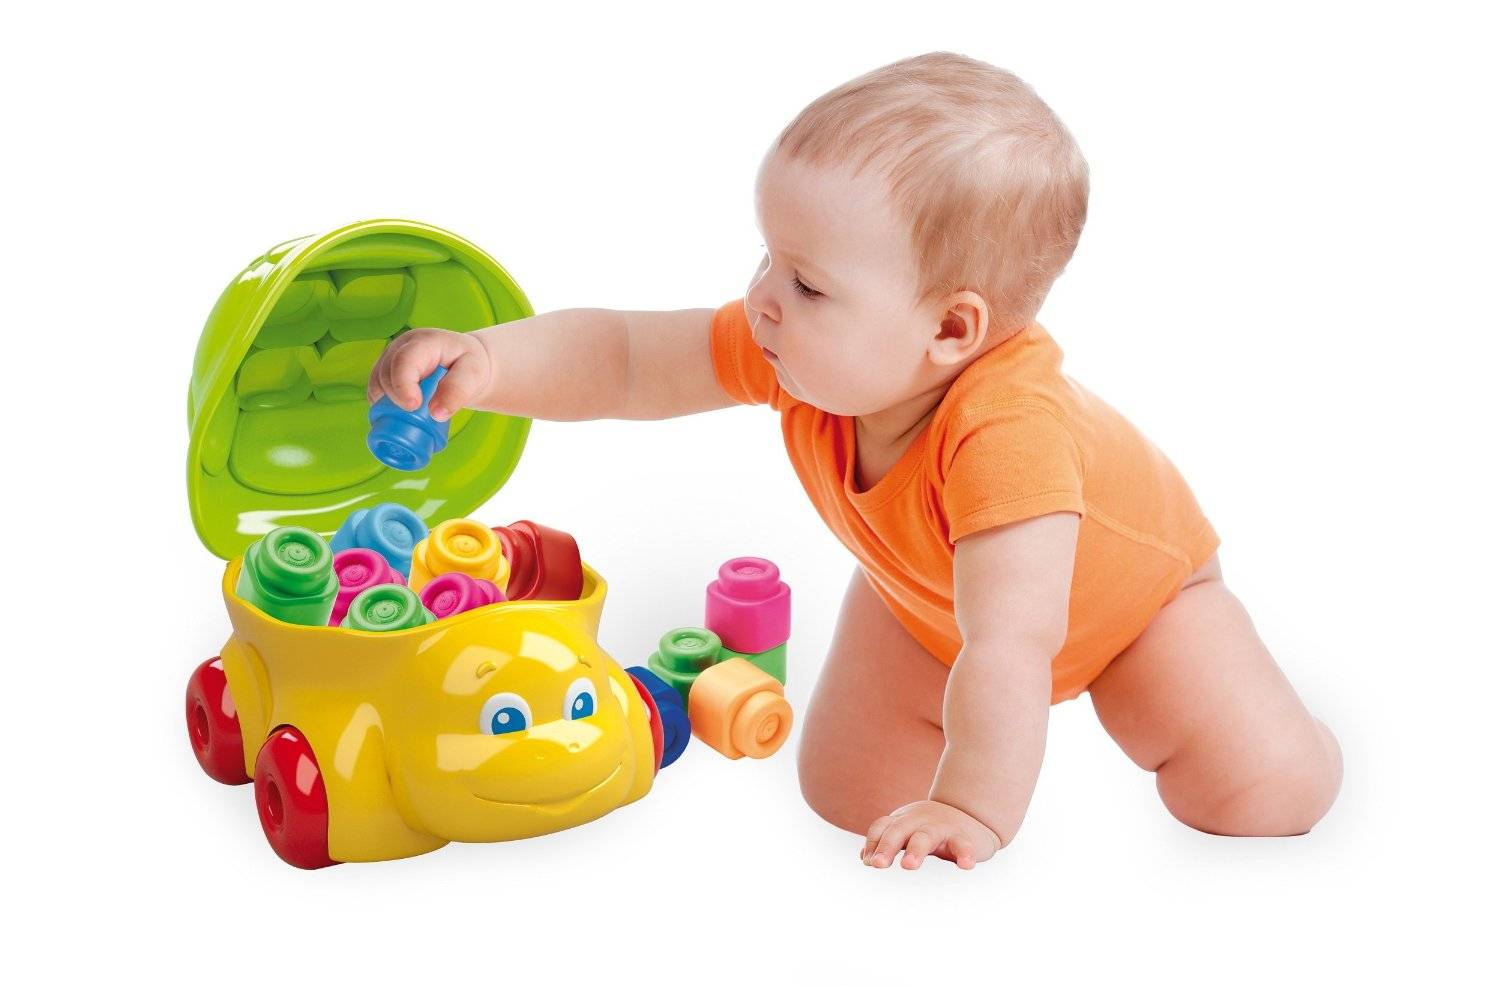 Игрушки детям до года купить. Конструктор Clementoni Baby Clemmy 14883 черепашка. Игрушки для детей до года. Игрушки для детей 1 год. Игрушки для детей 9 мес.